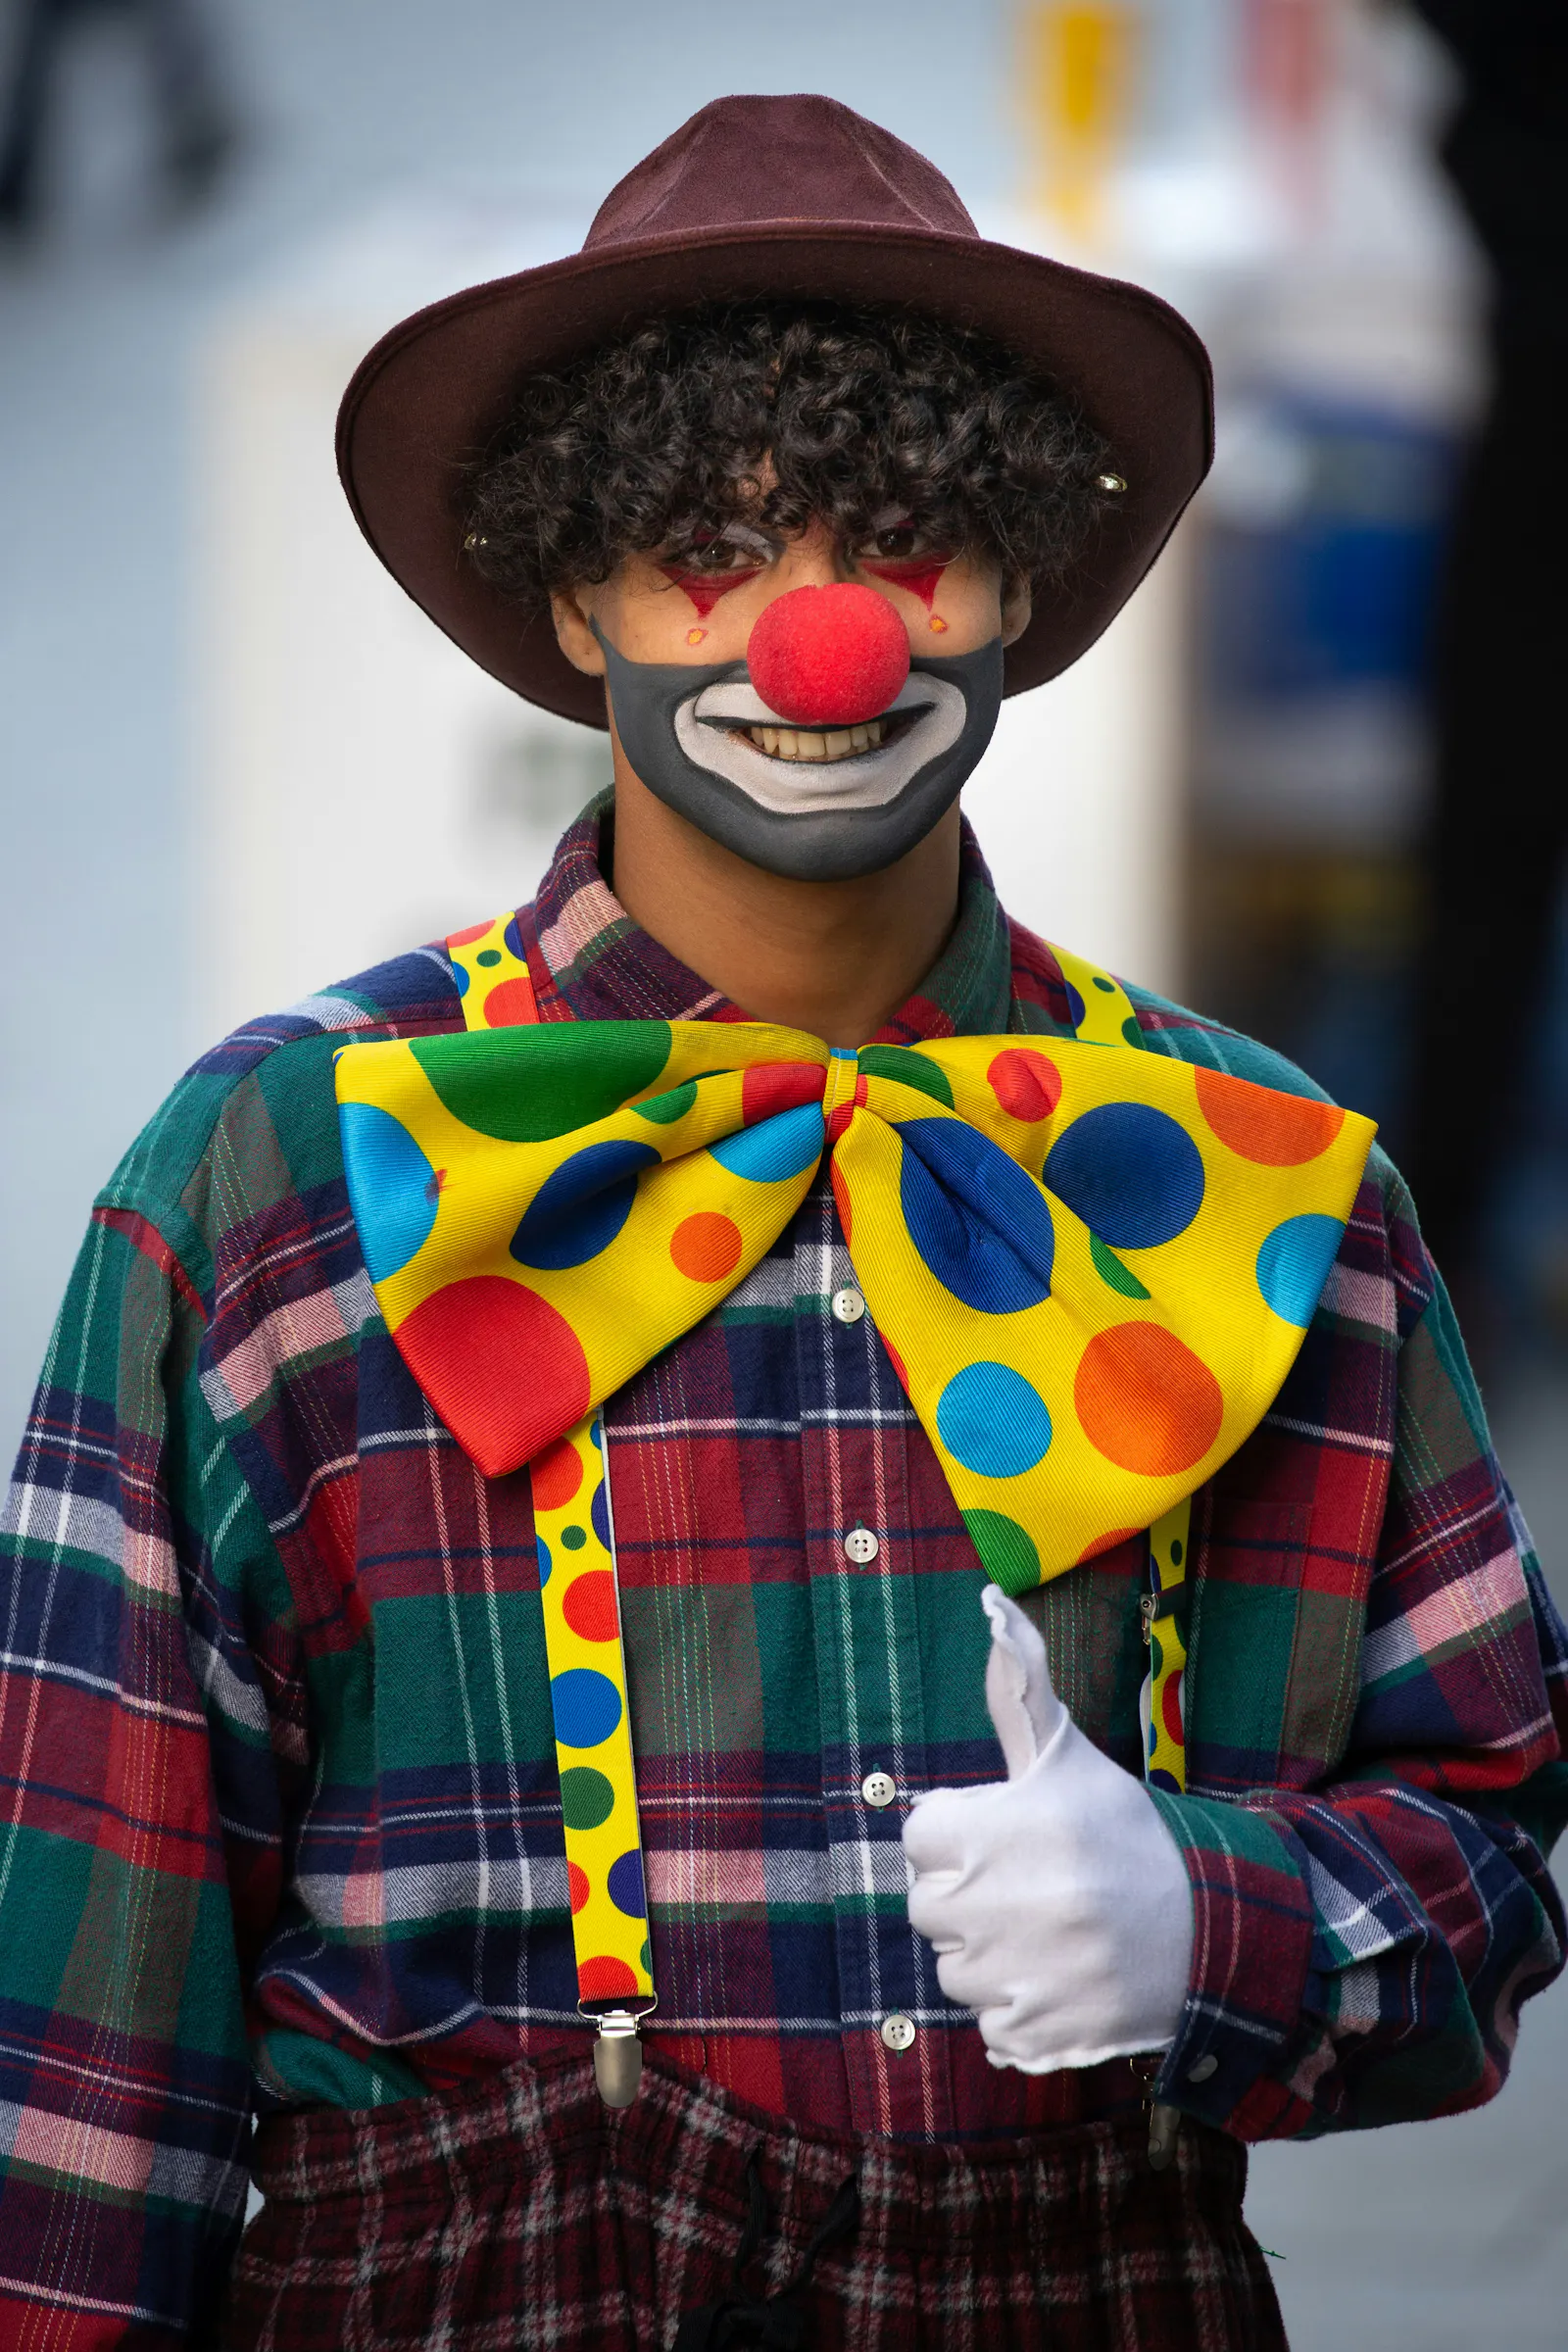 Foto eines Menschen, der als Clown verkleidet ist. Er trägt einen dunklen Hut, hat eine rote Clownsnase und eine riesige bunte Fliege. Seine linke Hand zeigt die Daumen hoch-Geste